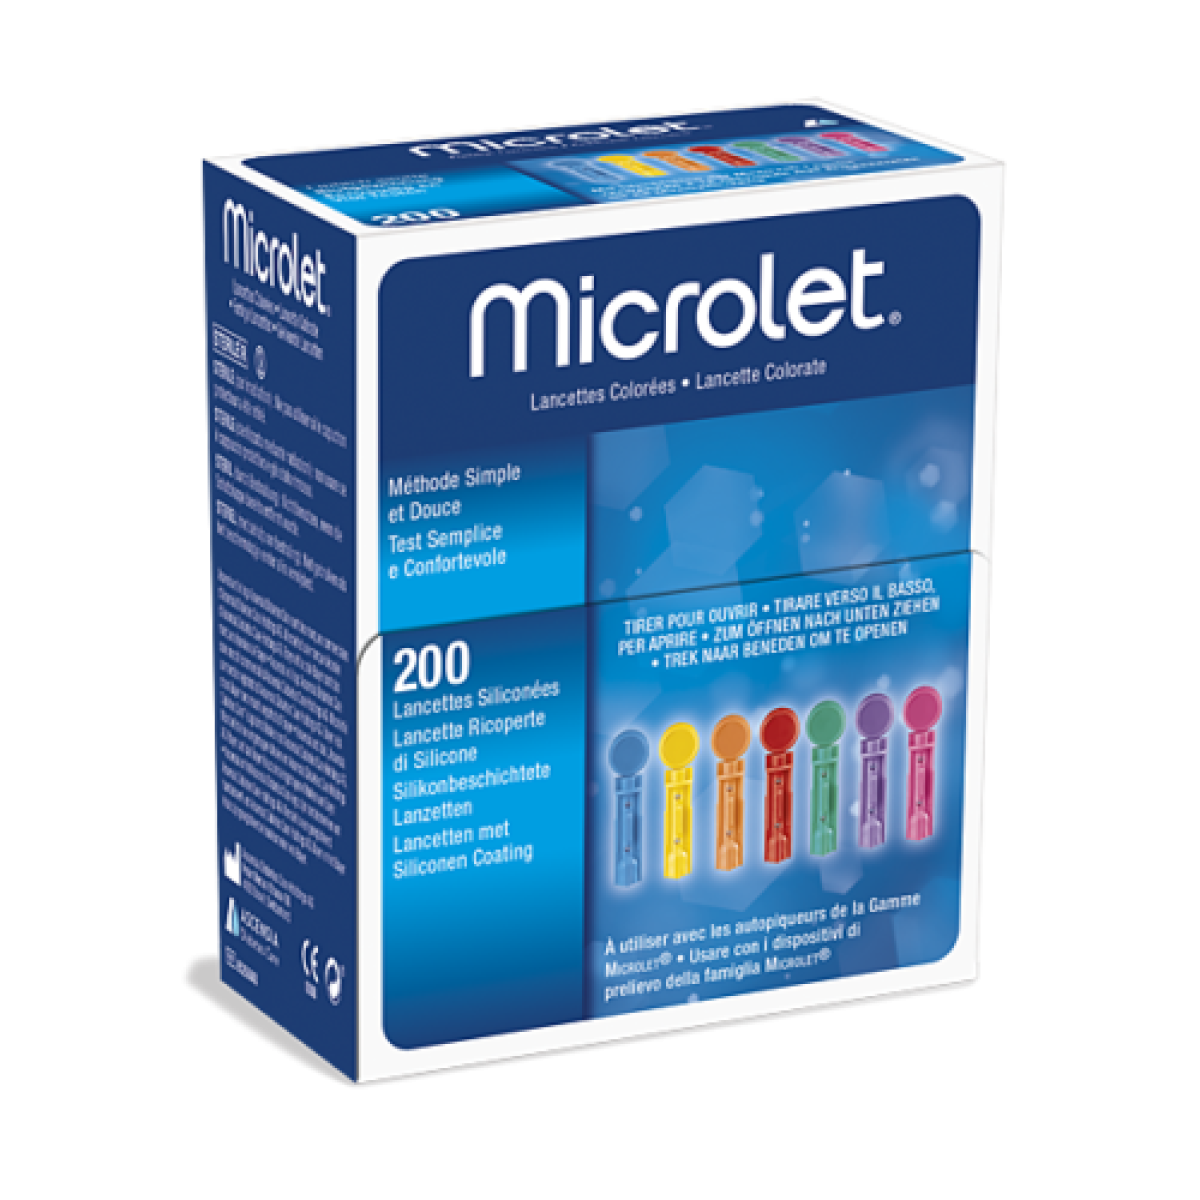 Ланцеты (иголки) для глюкометра Микролет (Microlet) - 200 шт